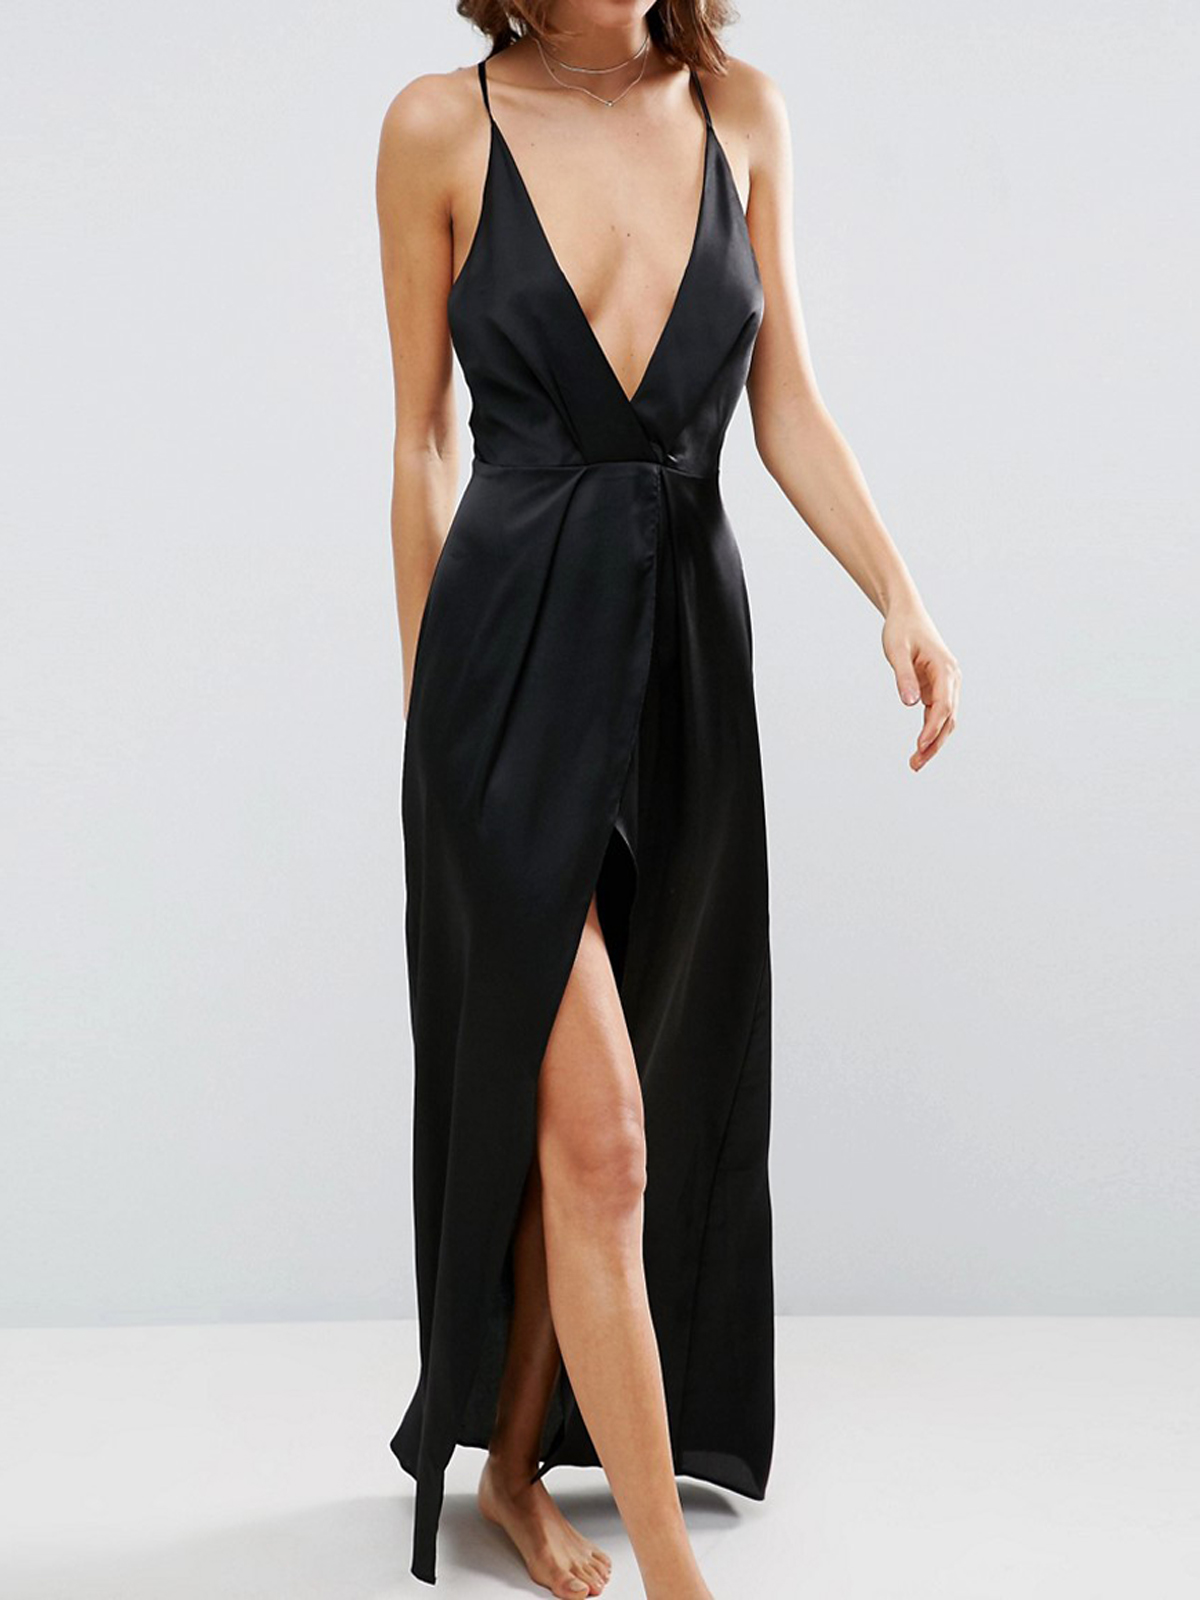 IRREGULAR- ASOS BLACK Strappy Dipped Hem Satin Dress - Size 4 to 18